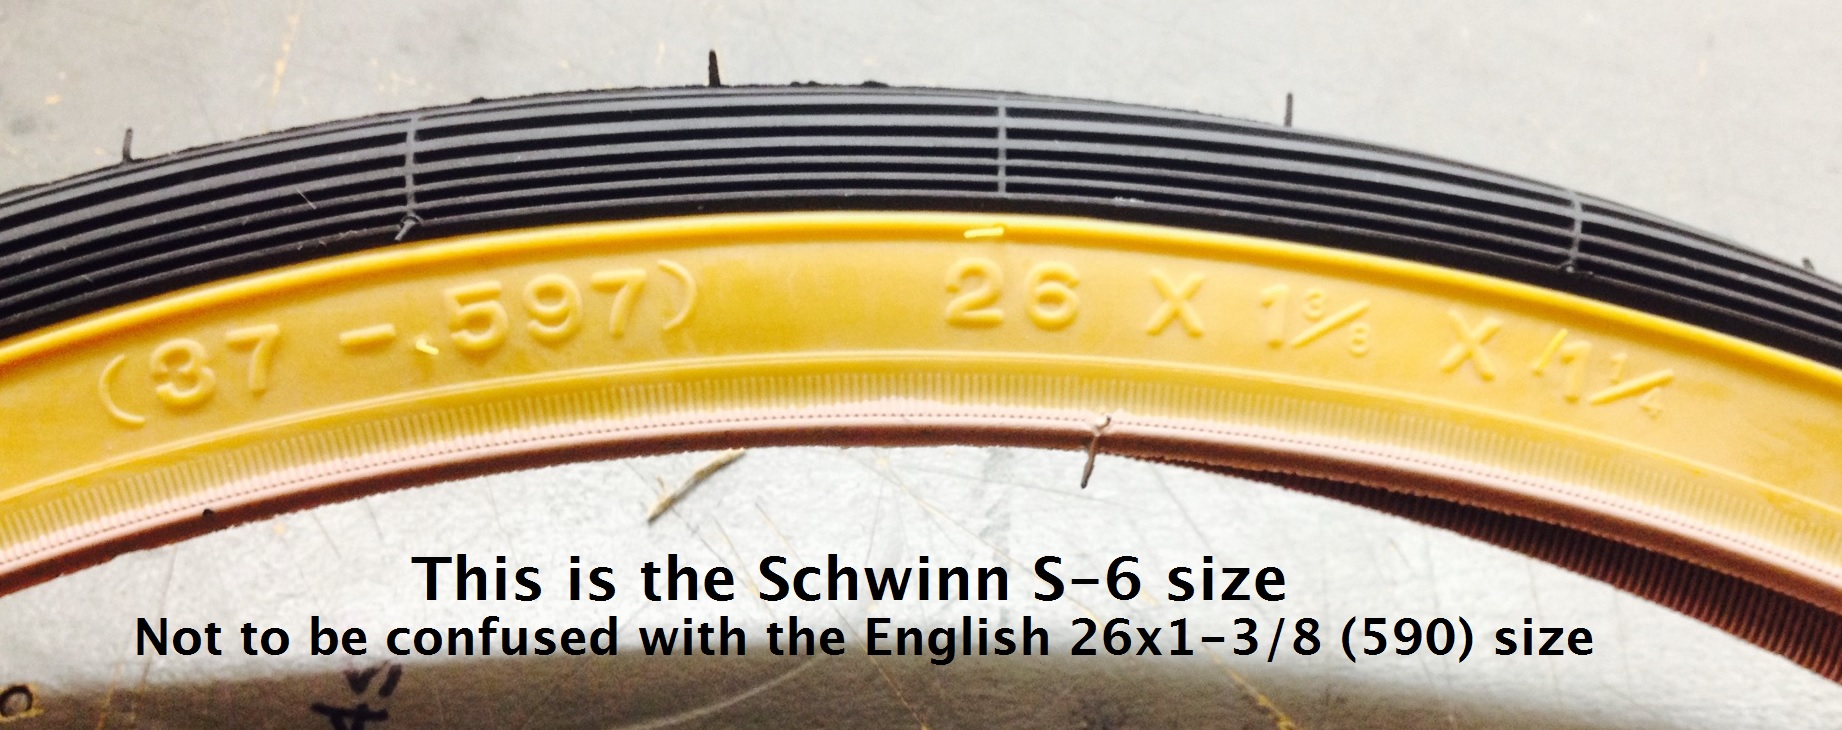 schwinn tire replacement